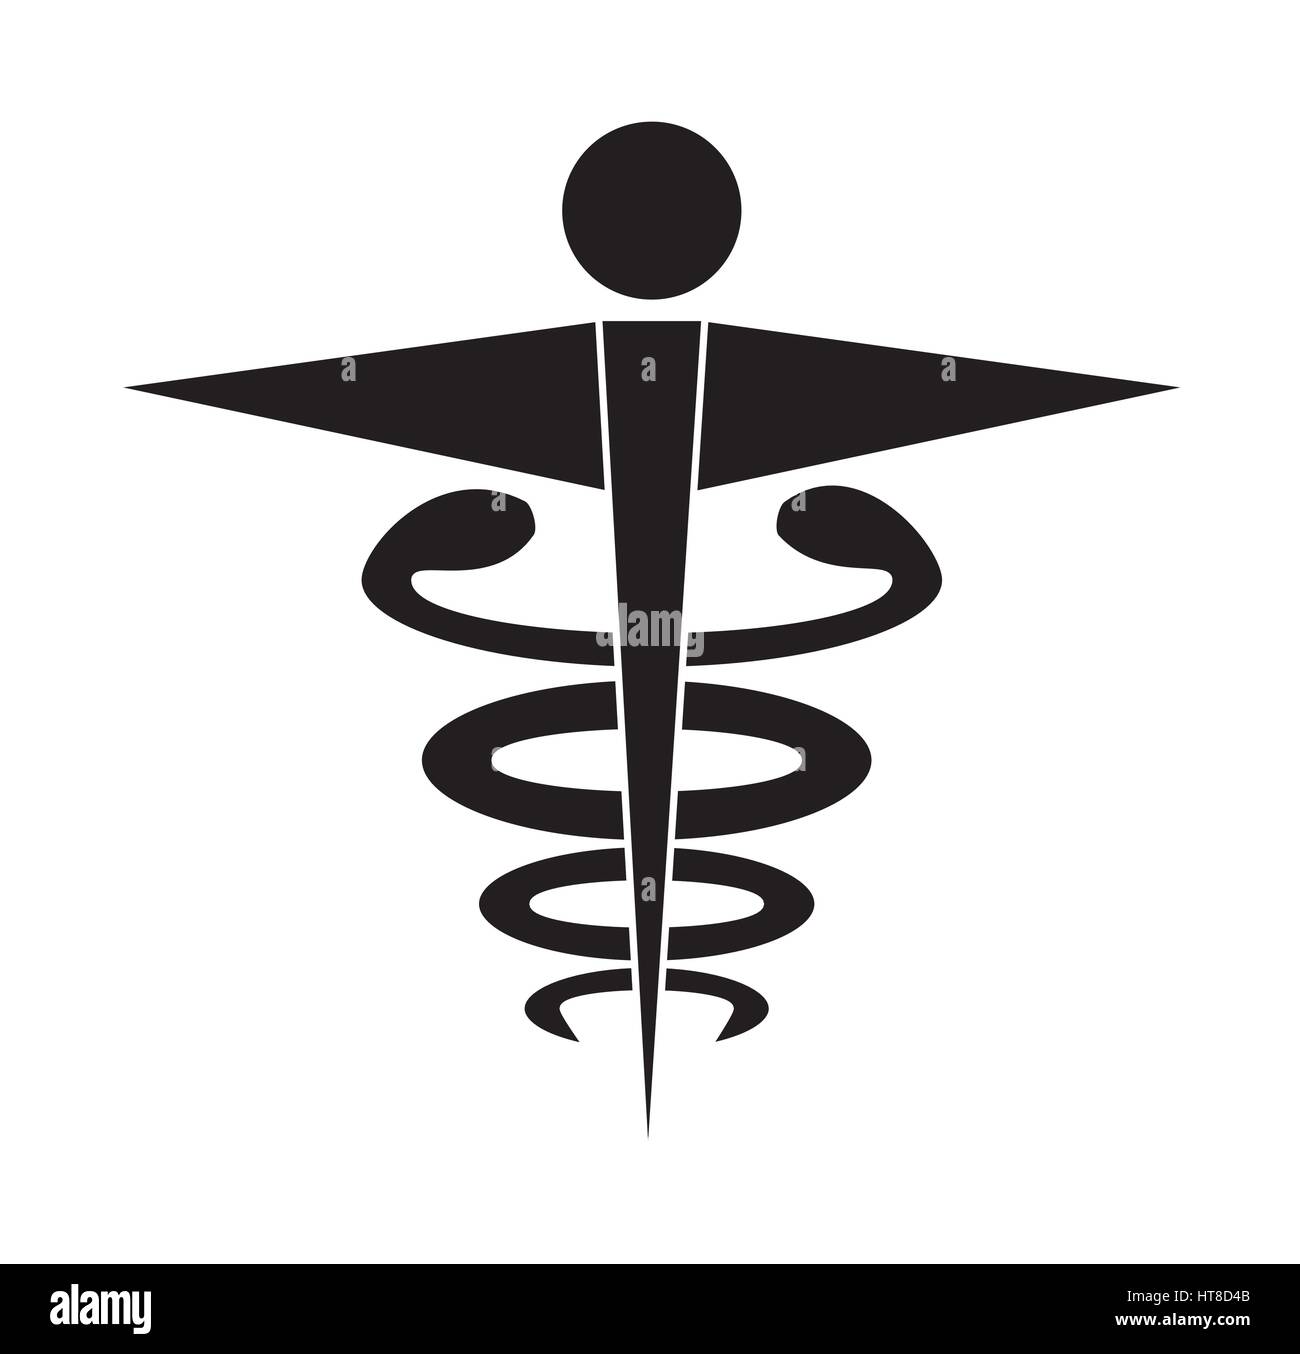 Blanco y negro caduceo símbolo médico aislado de vectores de fondo blanco. Iconos de médicos. Ilustración del Vector